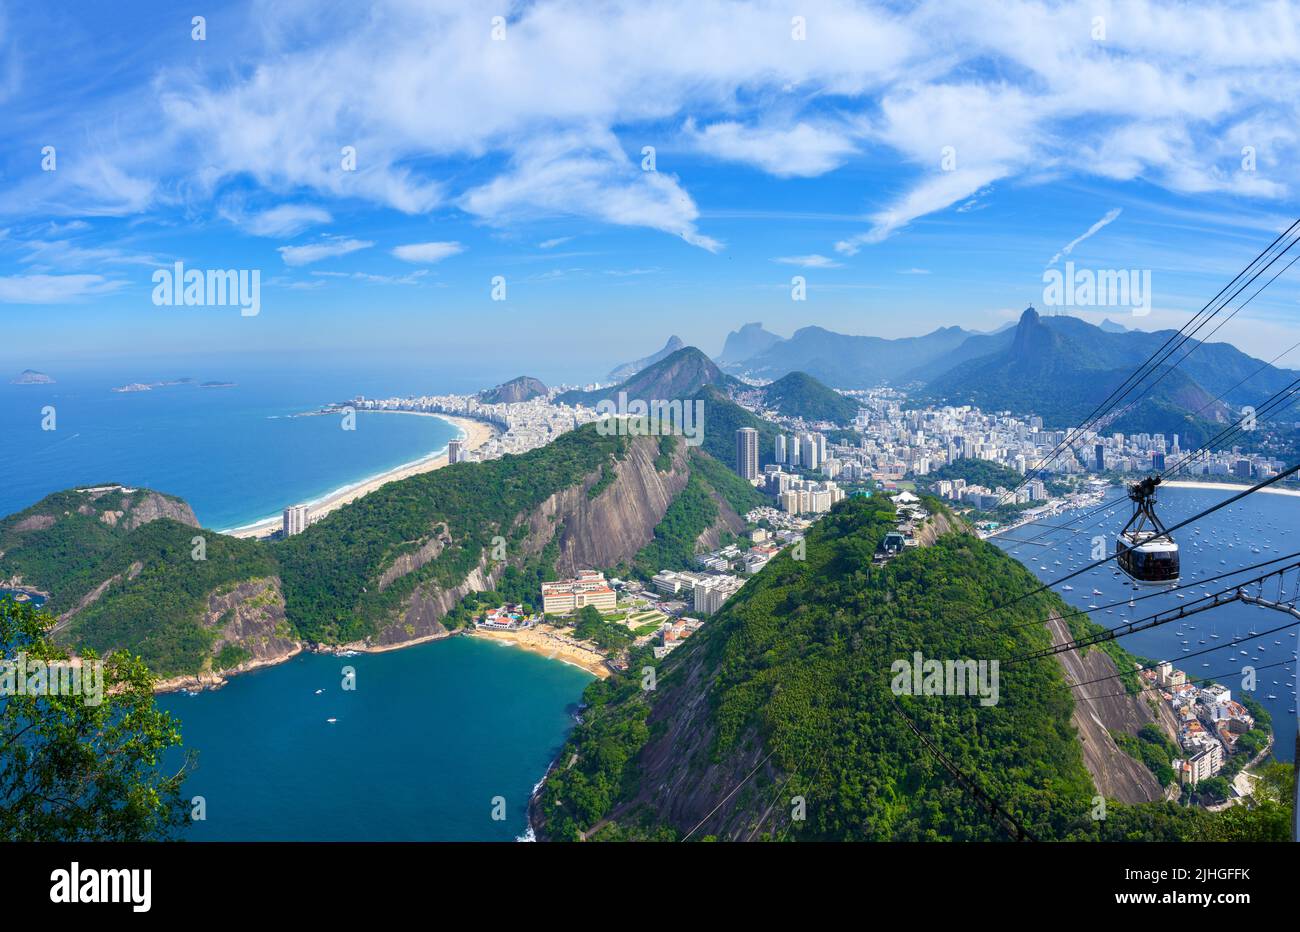 Estación superior del teleférico del Pan de Azúcar con vistas a la ciudad y a la playa de Copacabana, la montaña del Pan de Azúcar, Río de Janeiro, Brasil Foto de stock